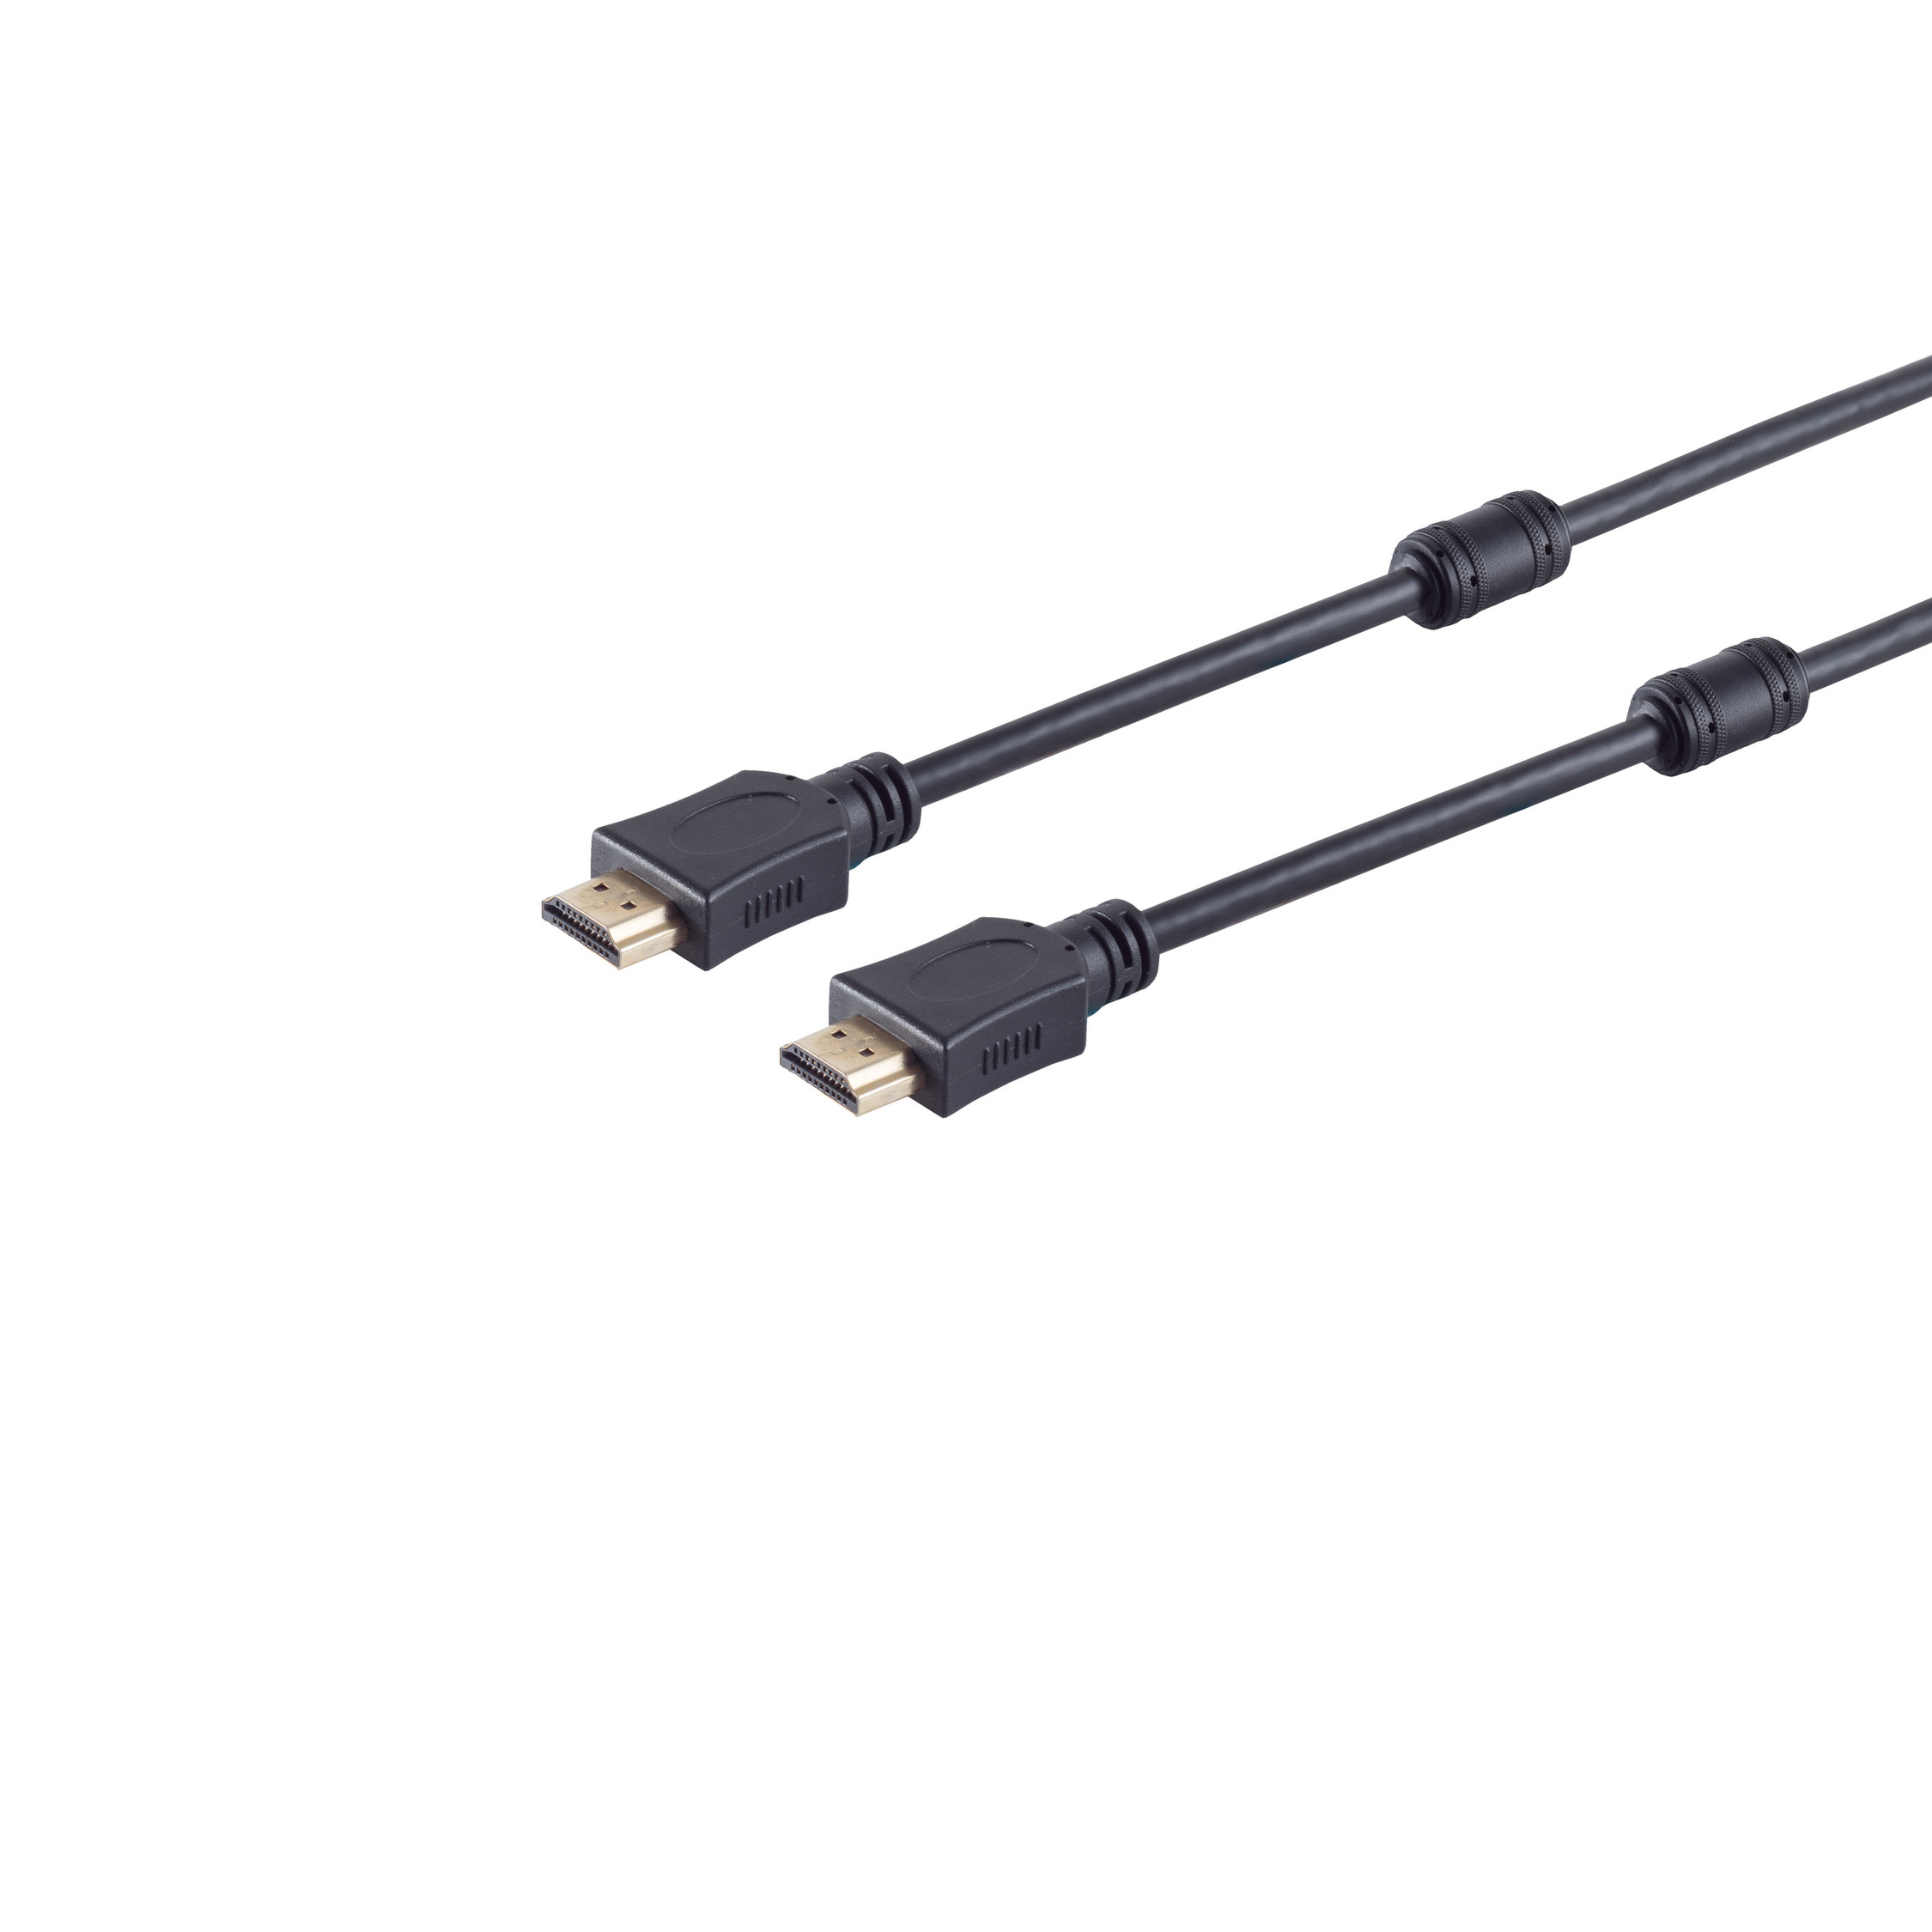 S/CONN MAXIMUM HDMI HEAC CONNECTIVITY verg HDMI 3m Ferrit A-Stecker/HDMI Kabel A-Stecker